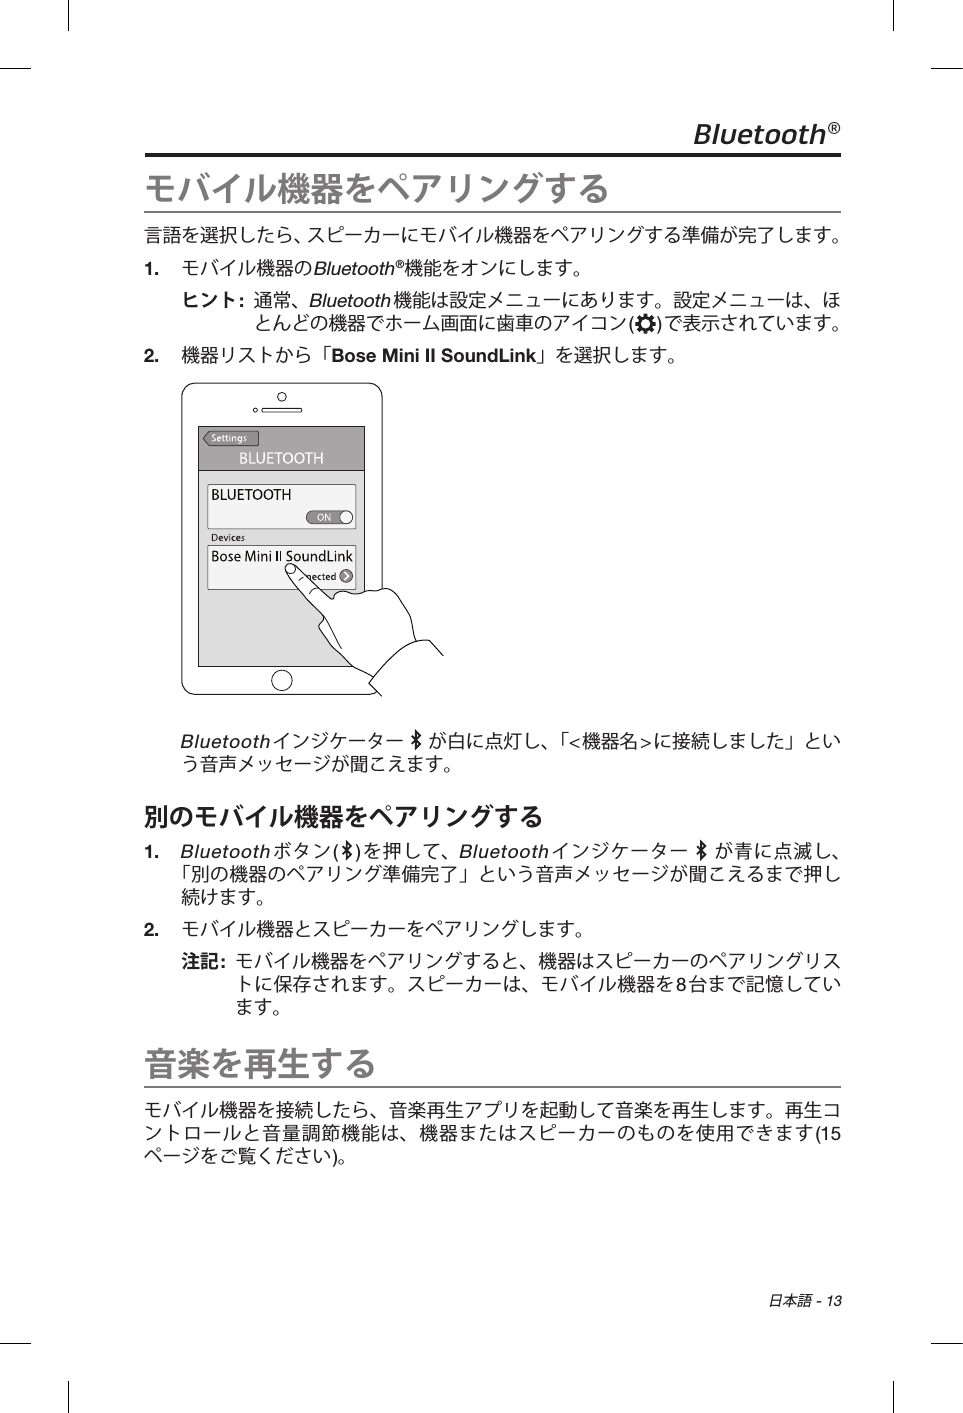  日本語 - 13Bluetooth®モバイル機器をペアリングする言語を選択したら、スピーカーにモバイル機器をペアリングする準備が完了します。1.  モバイル機器のBluetooth®機能をオンにします。ヒント:   通常、Bluetooth機能は設定メニューにあります。設定メニューは、ほとんどの機器でホーム画面に歯車のアイコン()で表示されています。2.  機器リストから「Bose Mini II SoundLink」を選択します。Bluetoothインジケーター   が白に点灯し、「&lt;機器名&gt;に接続しました」という音声メッセージが聞こえます。別のモバイル機器をペアリングする1.   Bluetoothボタン( )を押して、Bluetoothインジケーター   が青に点滅し、 「別の機器のペアリング準備完了」という音声メッセージが聞こえるまで押し続けます。2.  モバイル機器とスピーカーをペアリングします。注記:   モバイル機器をペアリングすると、機器はスピーカーのペアリングリストに保存されます。スピーカーは、モバイル機器を8台まで記憶しています。音楽を再生するモバイル機器を接続したら、音楽再生アプリを起動して音楽を再生します。再生コントロールと音量調節機能は、機器またはスピーカーのものを使用できます(15ページをご覧ください)。